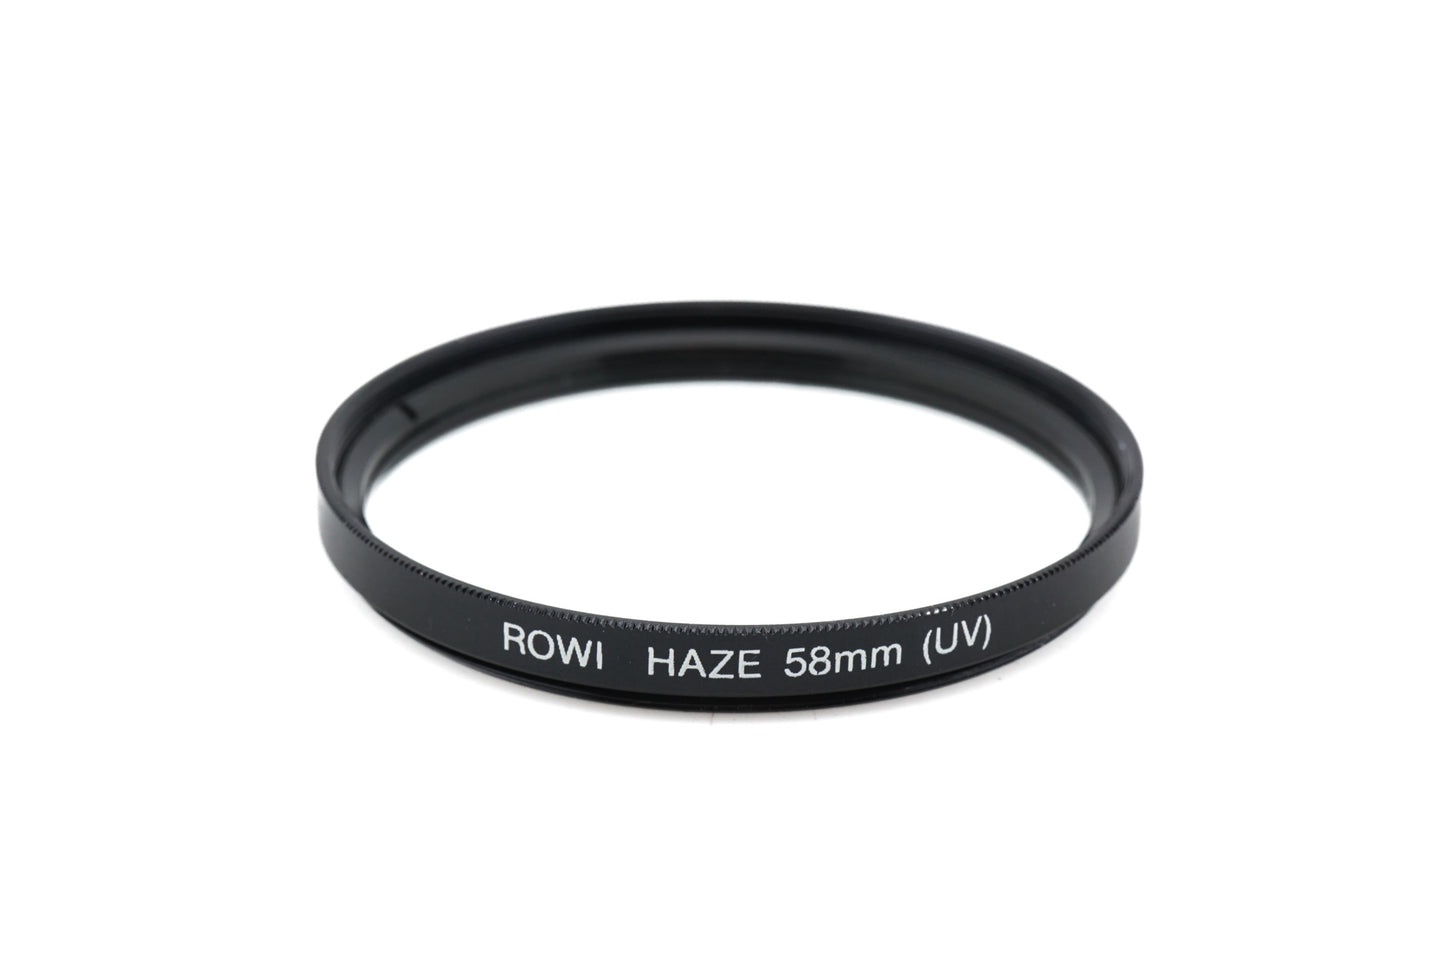 Rowi 58mm Haze UV Filter